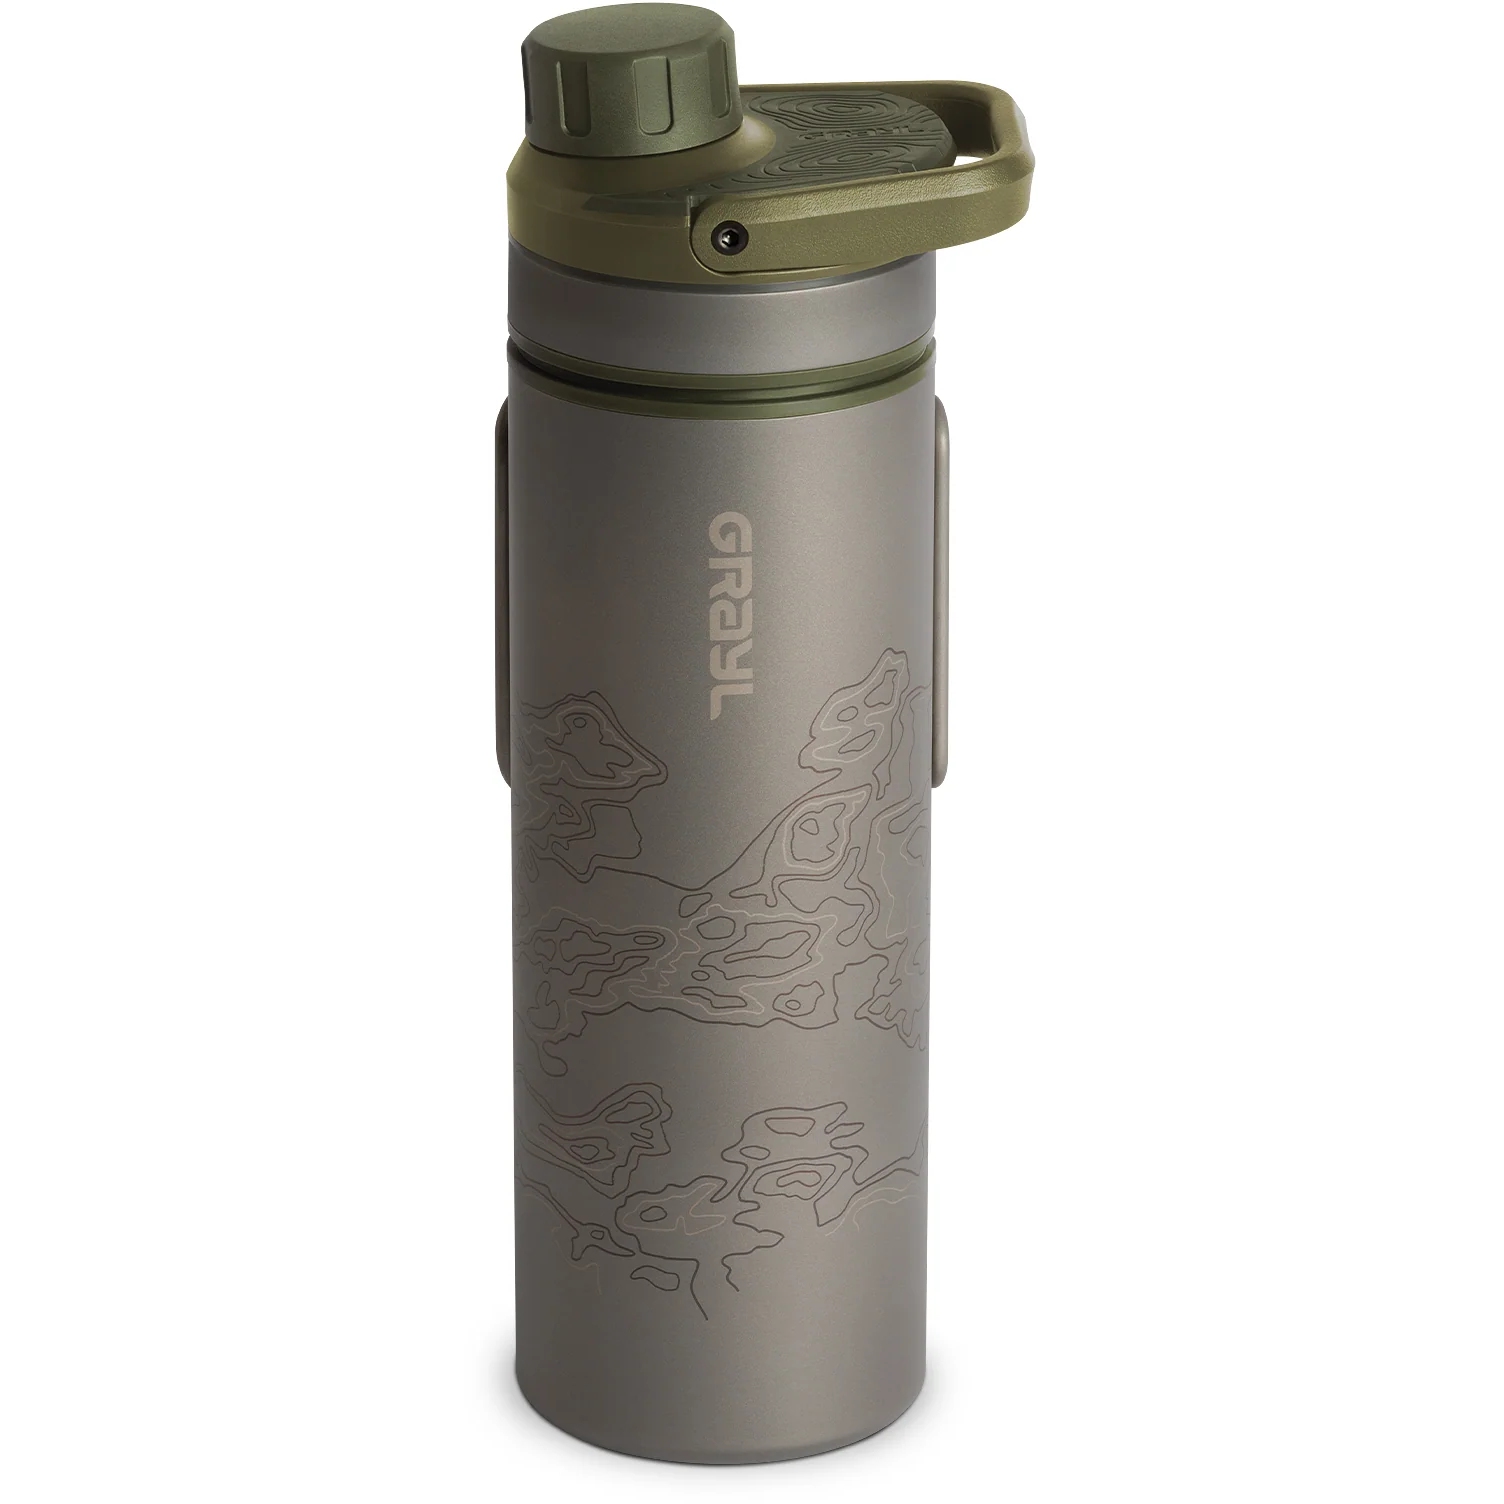 Produktbild von Grayl UltraPress Purifier Titanflasche mit Wasserfilter - 500ml - Olive Drab